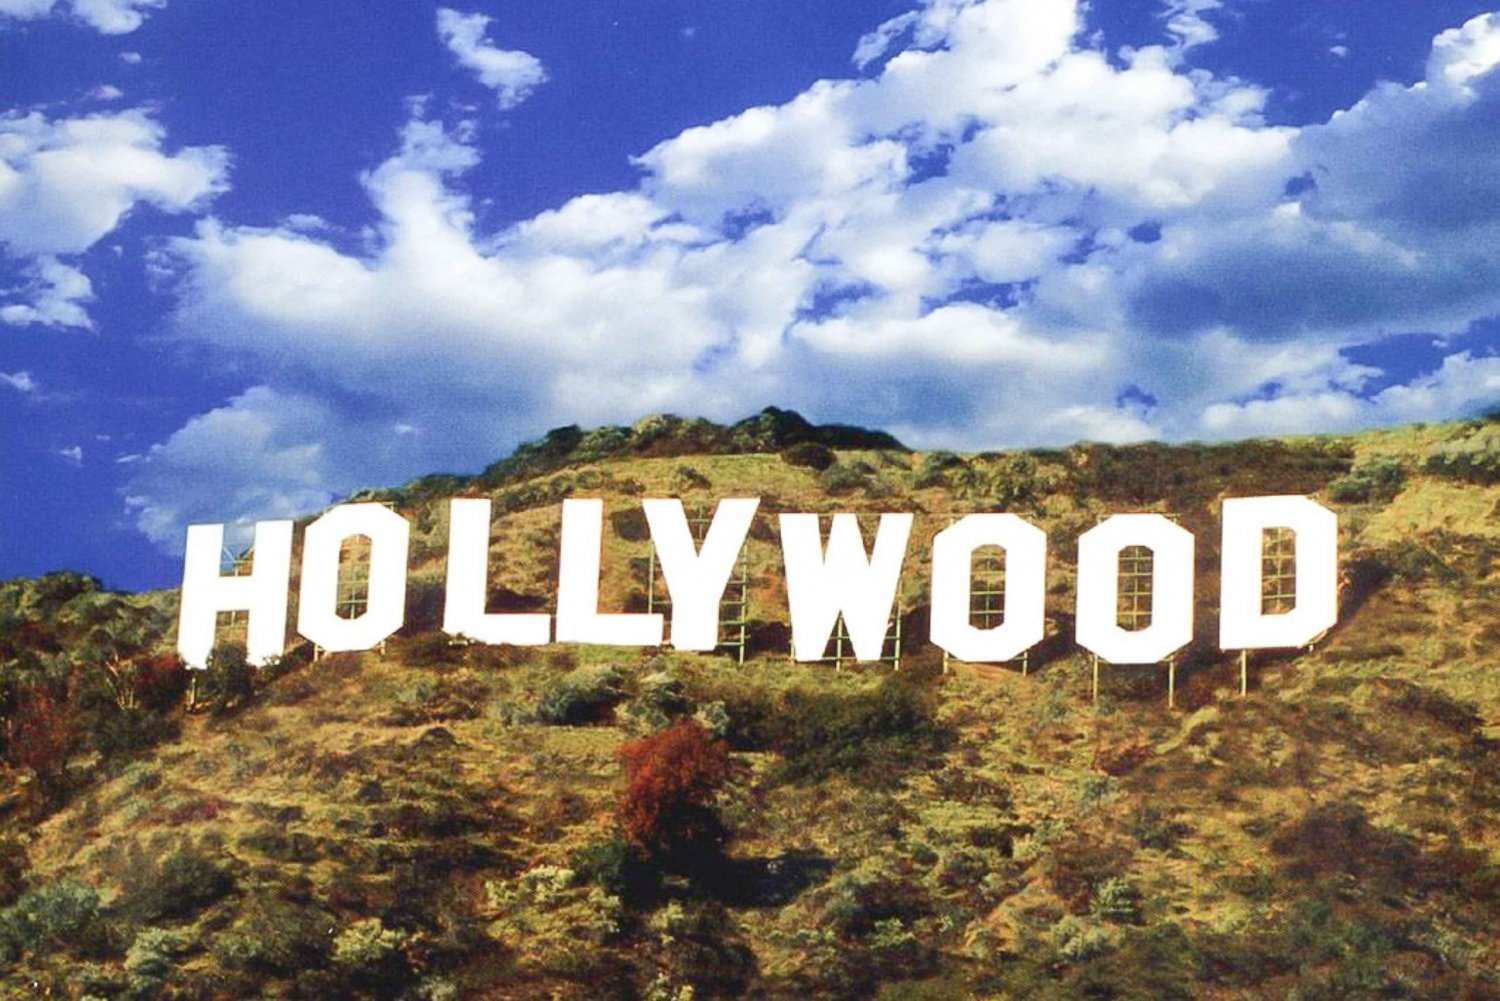 Las Vegasista: Hollywoodin ja Los Angelesin päiväretki